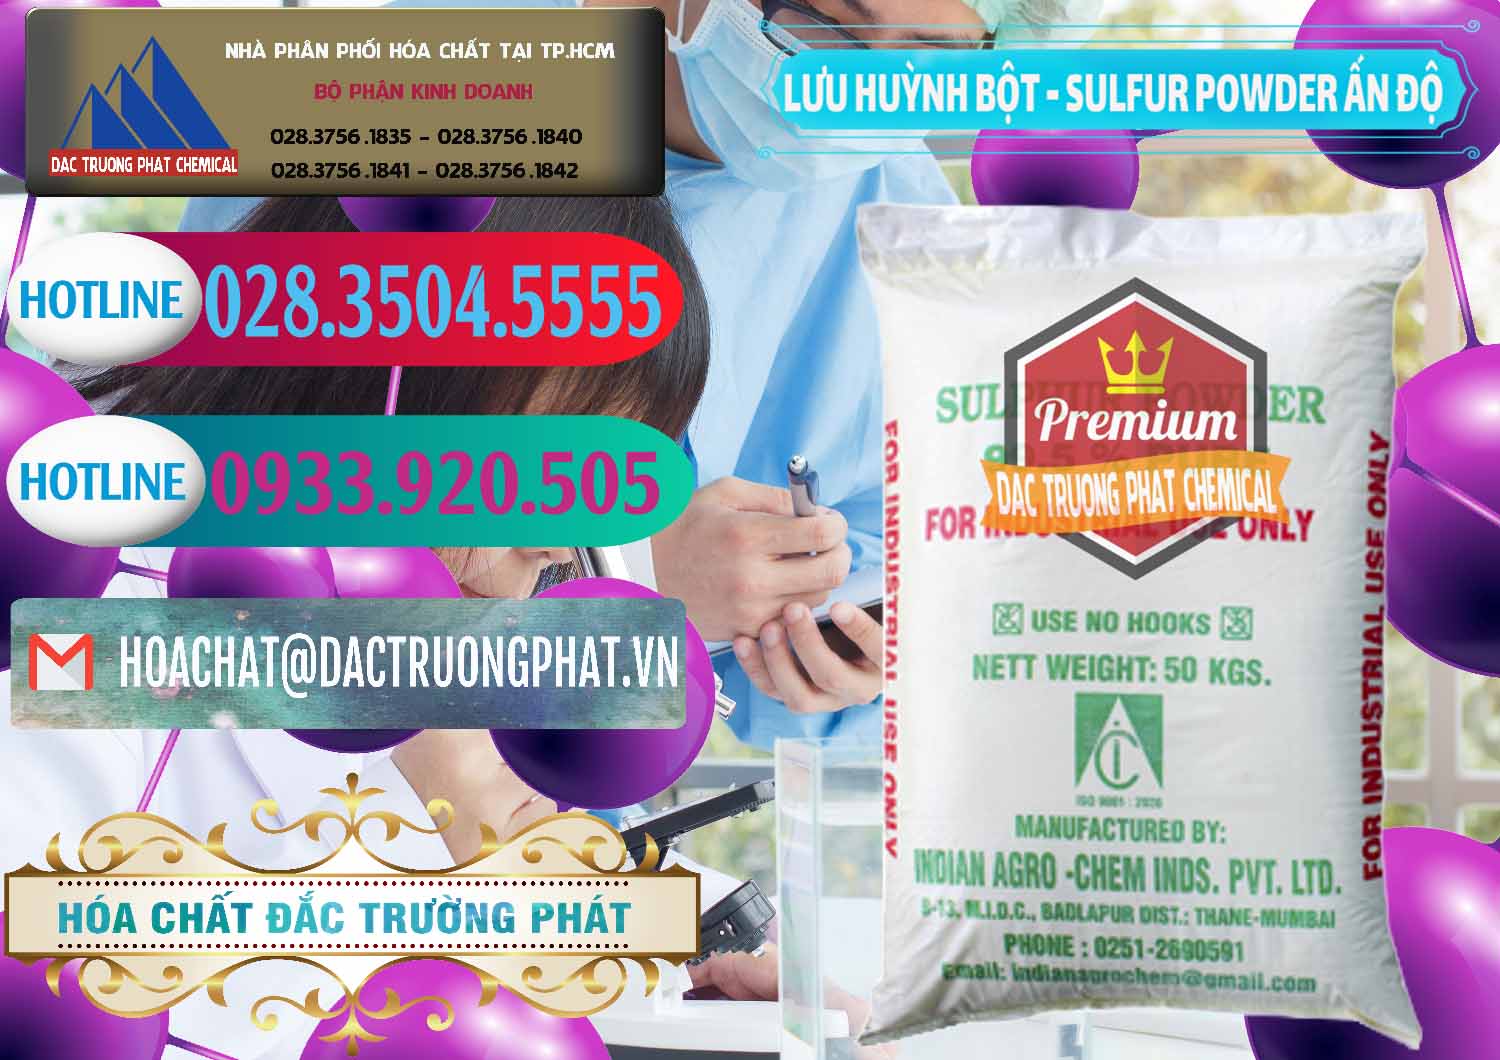 Cty kinh doanh _ bán Lưu huỳnh Bột - Sulfur Powder Ấn Độ India - 0347 - Chuyên phân phối & cung ứng hóa chất tại TP.HCM - truongphat.vn